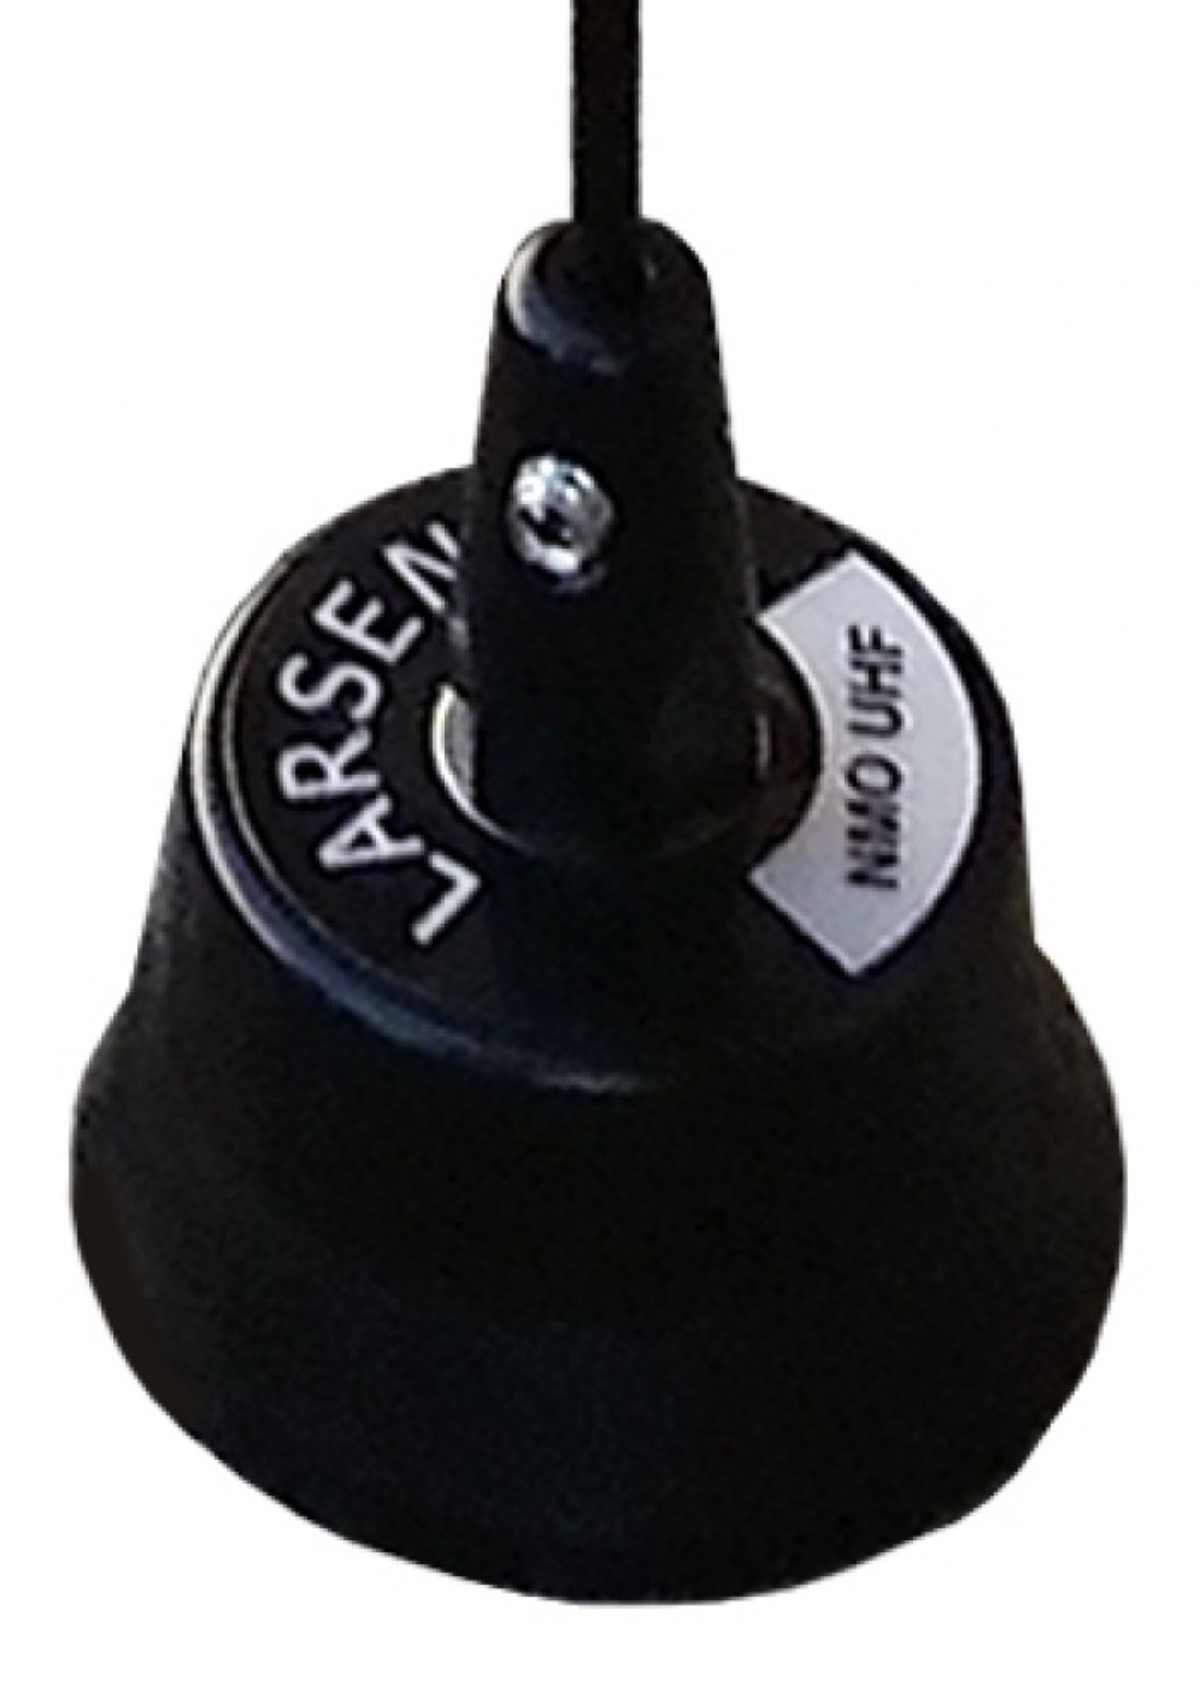 Pulse Larsen LM450C UHF 450-470 MHz Antenne de fouet et bobine de base - Inoxydable